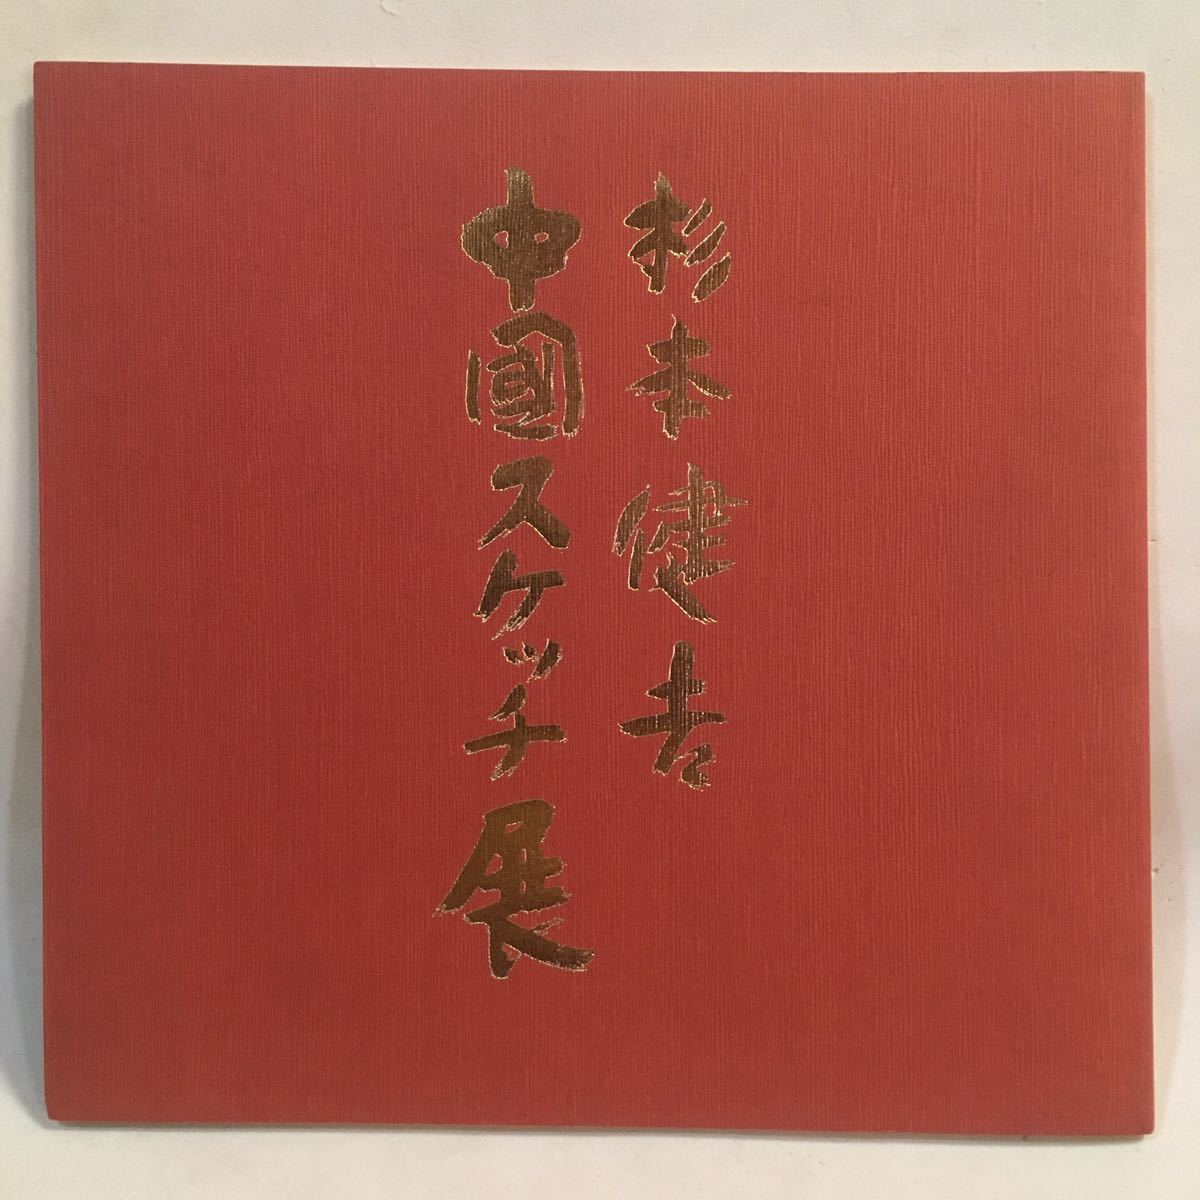 معرض كينكيشي سوجيموتو الصيني للرسم 25 رسمة ملونة متجر أساهي شيمبون ميتيتسو متعدد الأقسام 1982, تلوين, كتاب فن, مجموعة من الأعمال, كتالوج مصور